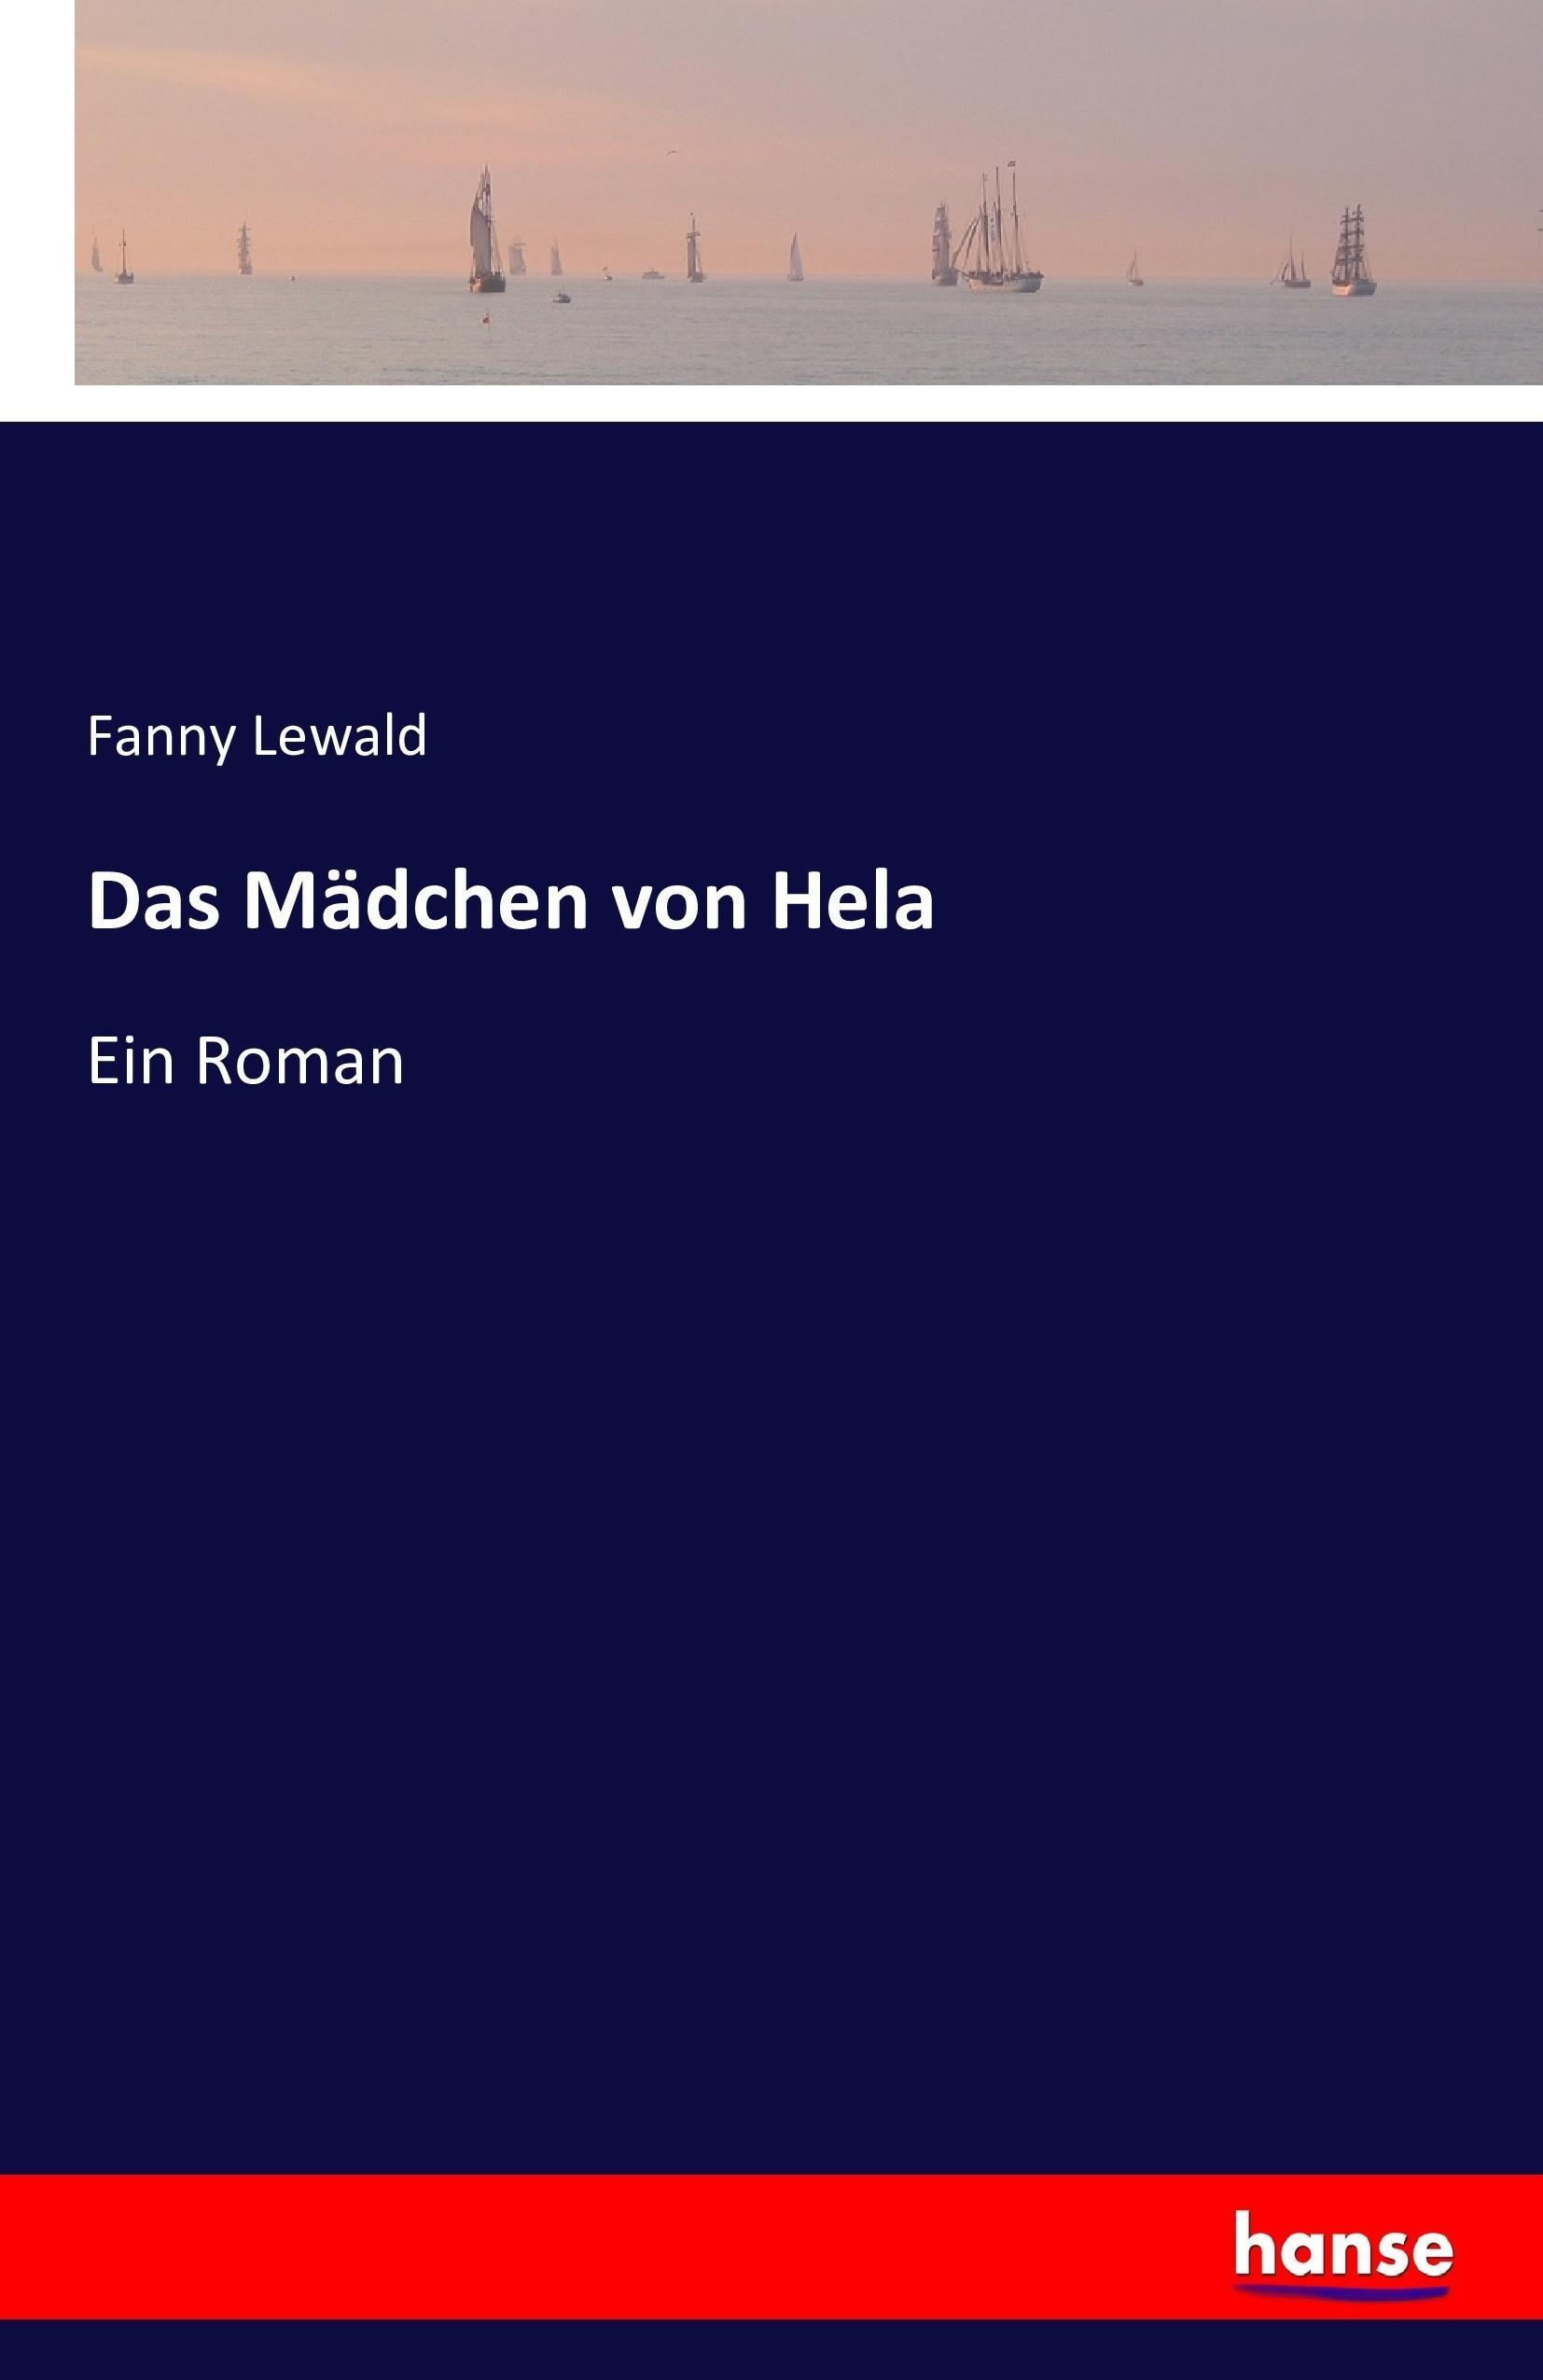 Das Mädchen von Hela | Ein Roman | Fanny Lewald | Taschenbuch | Paperback | 312 S. | Deutsch | 2016 | hansebooks | EAN 9783741157103 - Lewald, Fanny